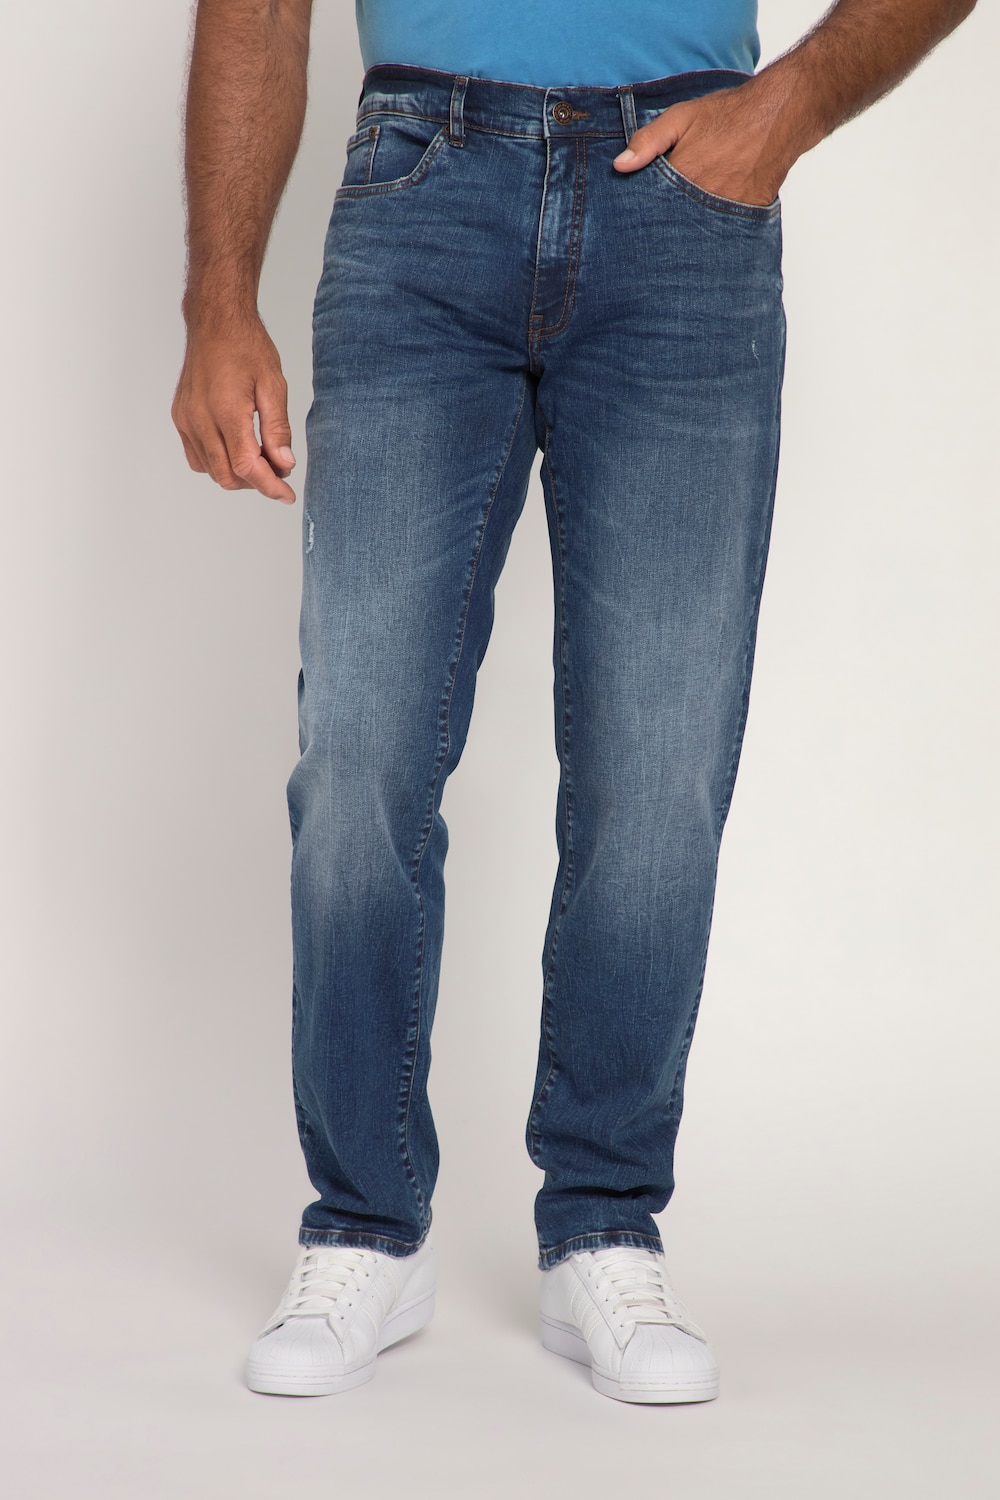 Grote Maten jeans, Heren, blauw, Maat: 68, Katoen, JP1880